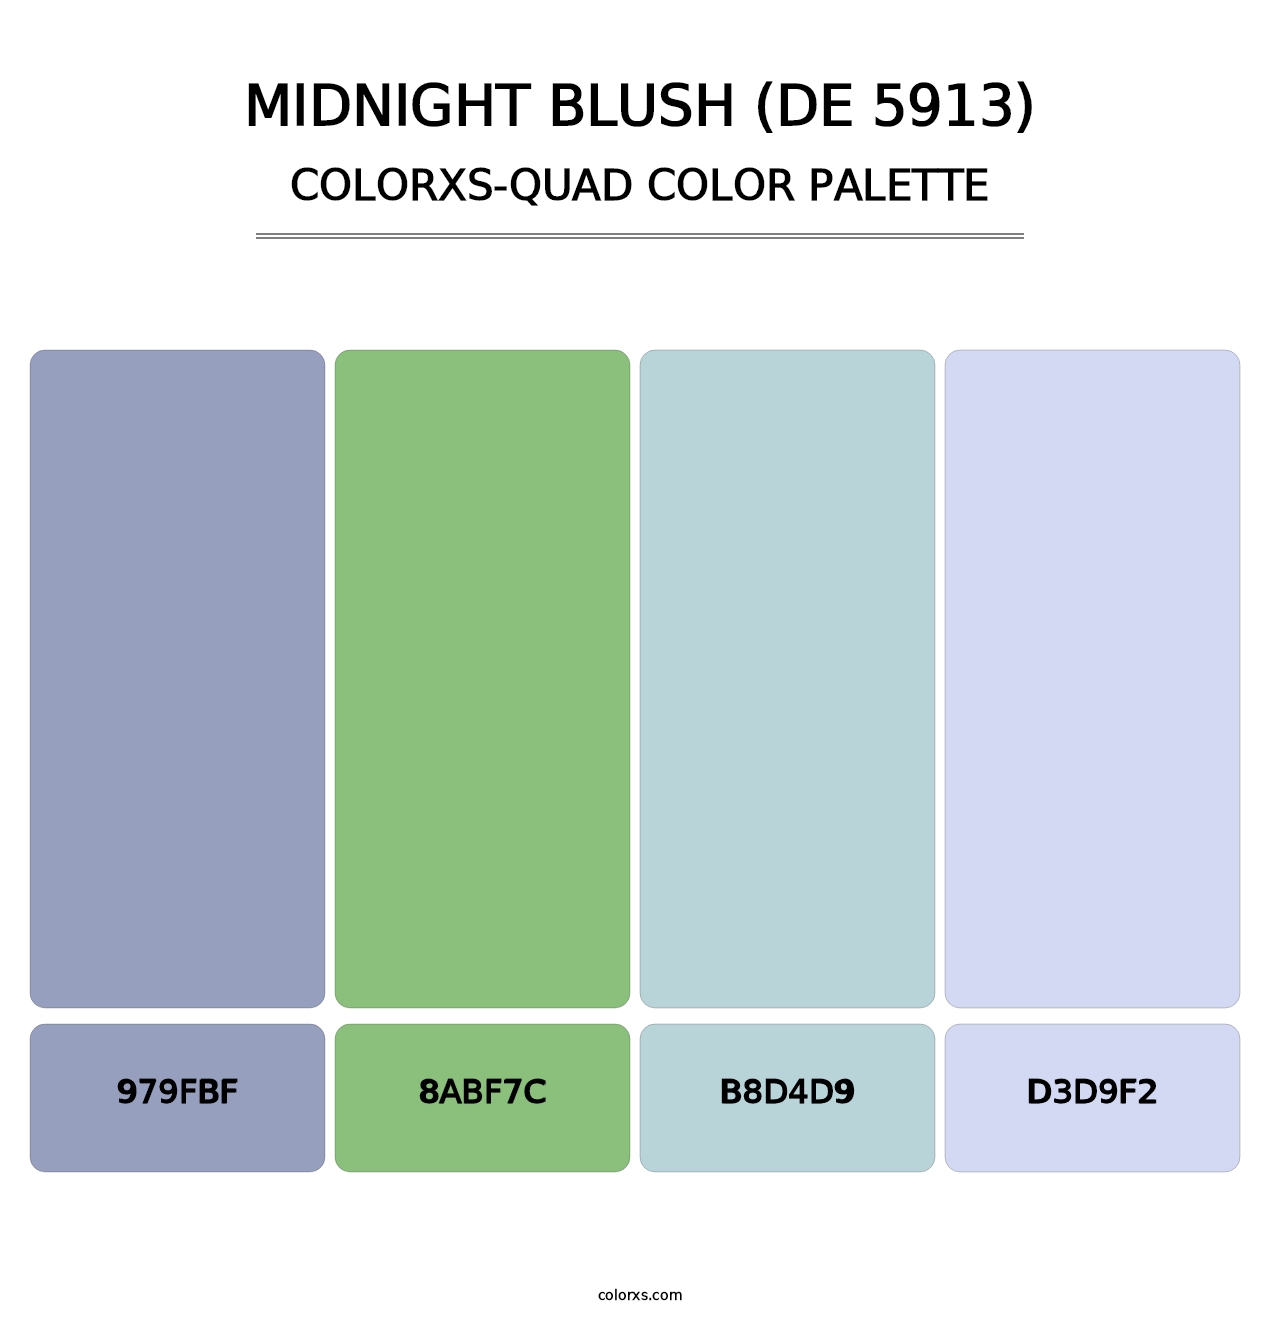 Midnight Blush (DE 5913) - Colorxs Quad Palette